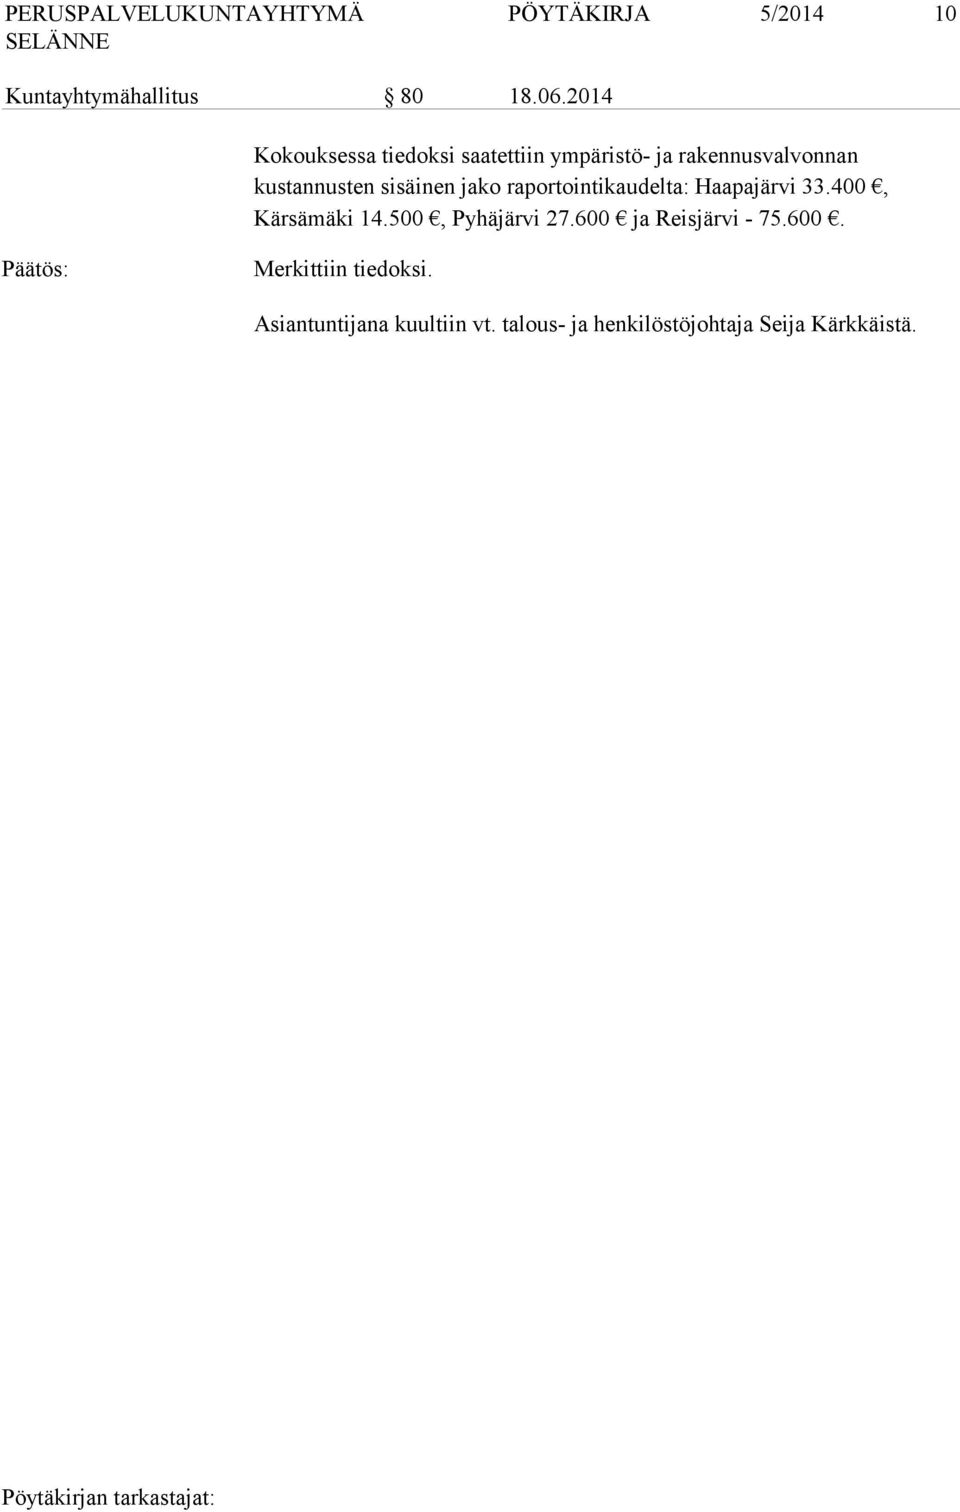 sisäinen jako raportointikaudelta: Haapajärvi 33.400, Kärsämäki 14.500, Pyhäjärvi 27.